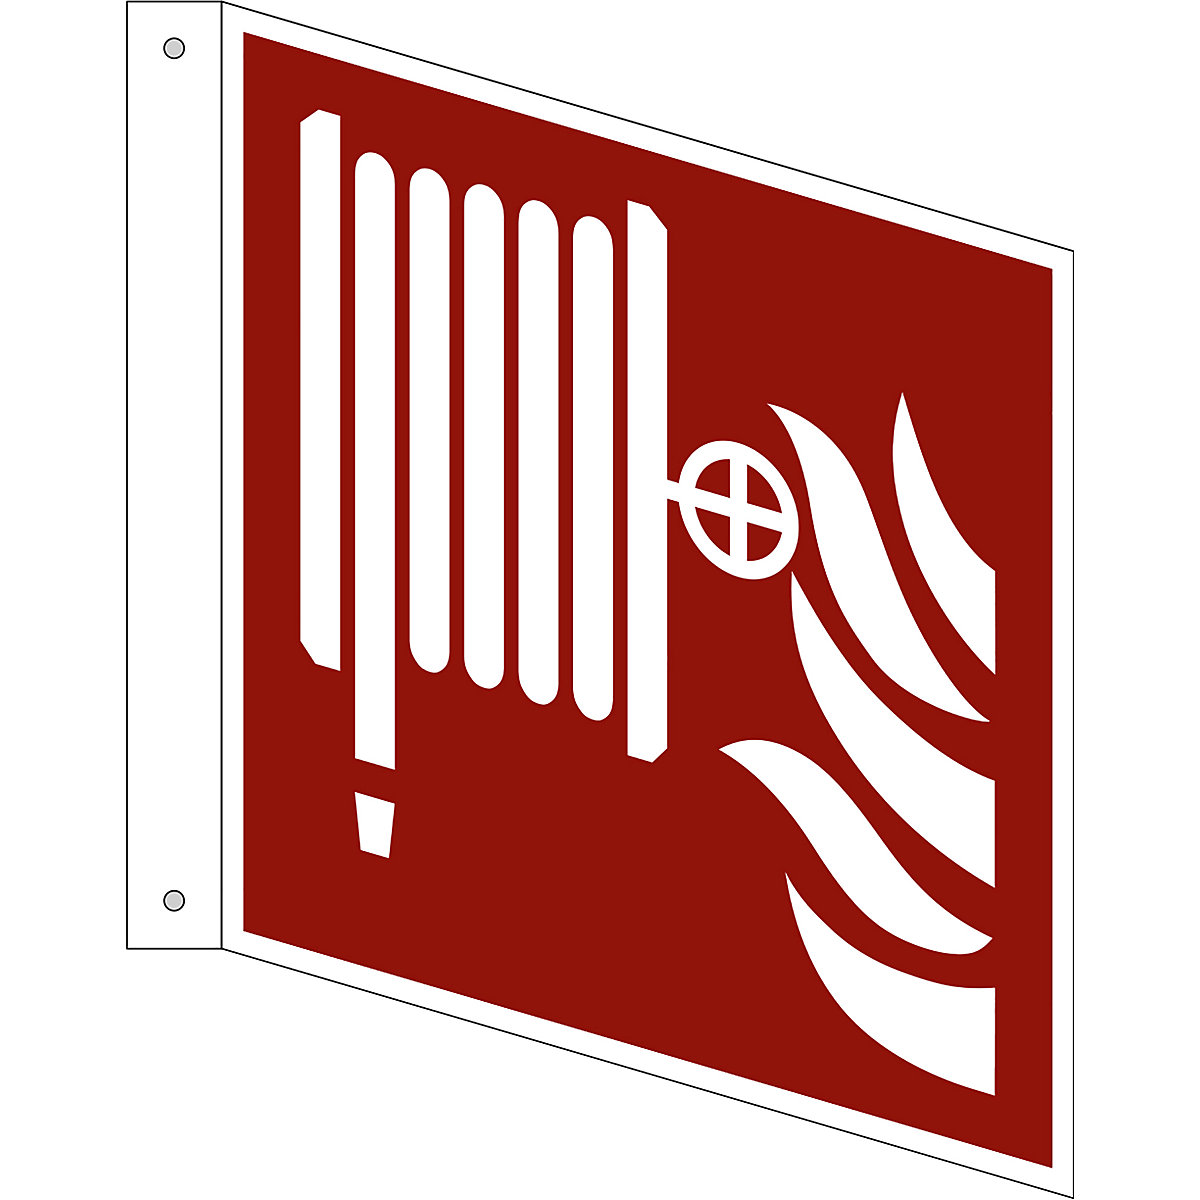 Značka pro ochranu proti požáru, požární hadice, bal.j. 10 ks, plast, vlajkový štítek, 200 x 200 mm